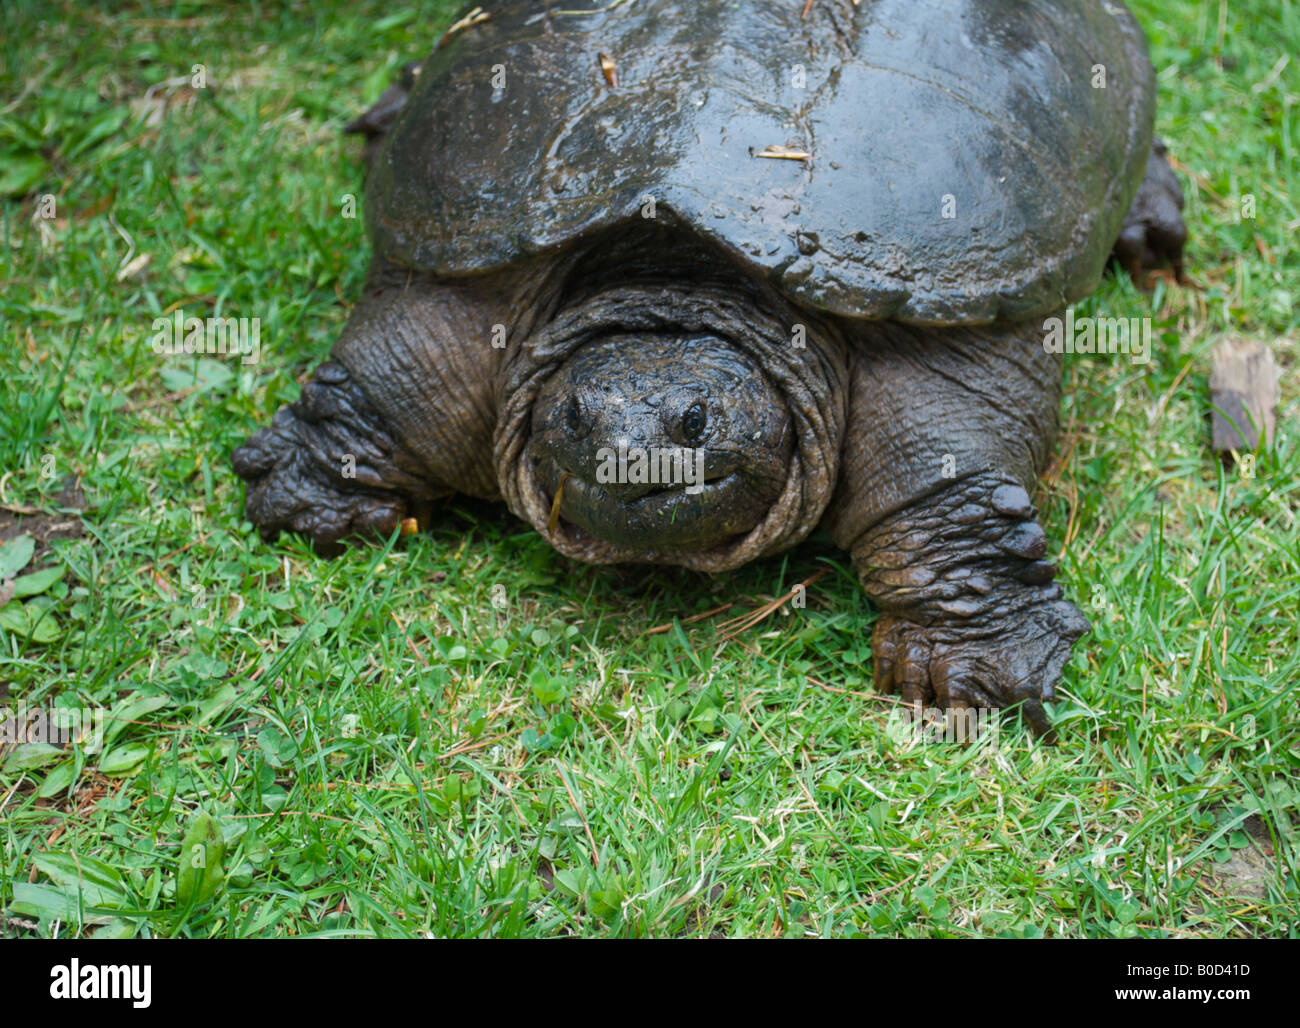 Snapping animale tartaruga la vita selvatica rettile grandi griffe shell piedi giorno d'acqua dolce all'aperto Foto Stock